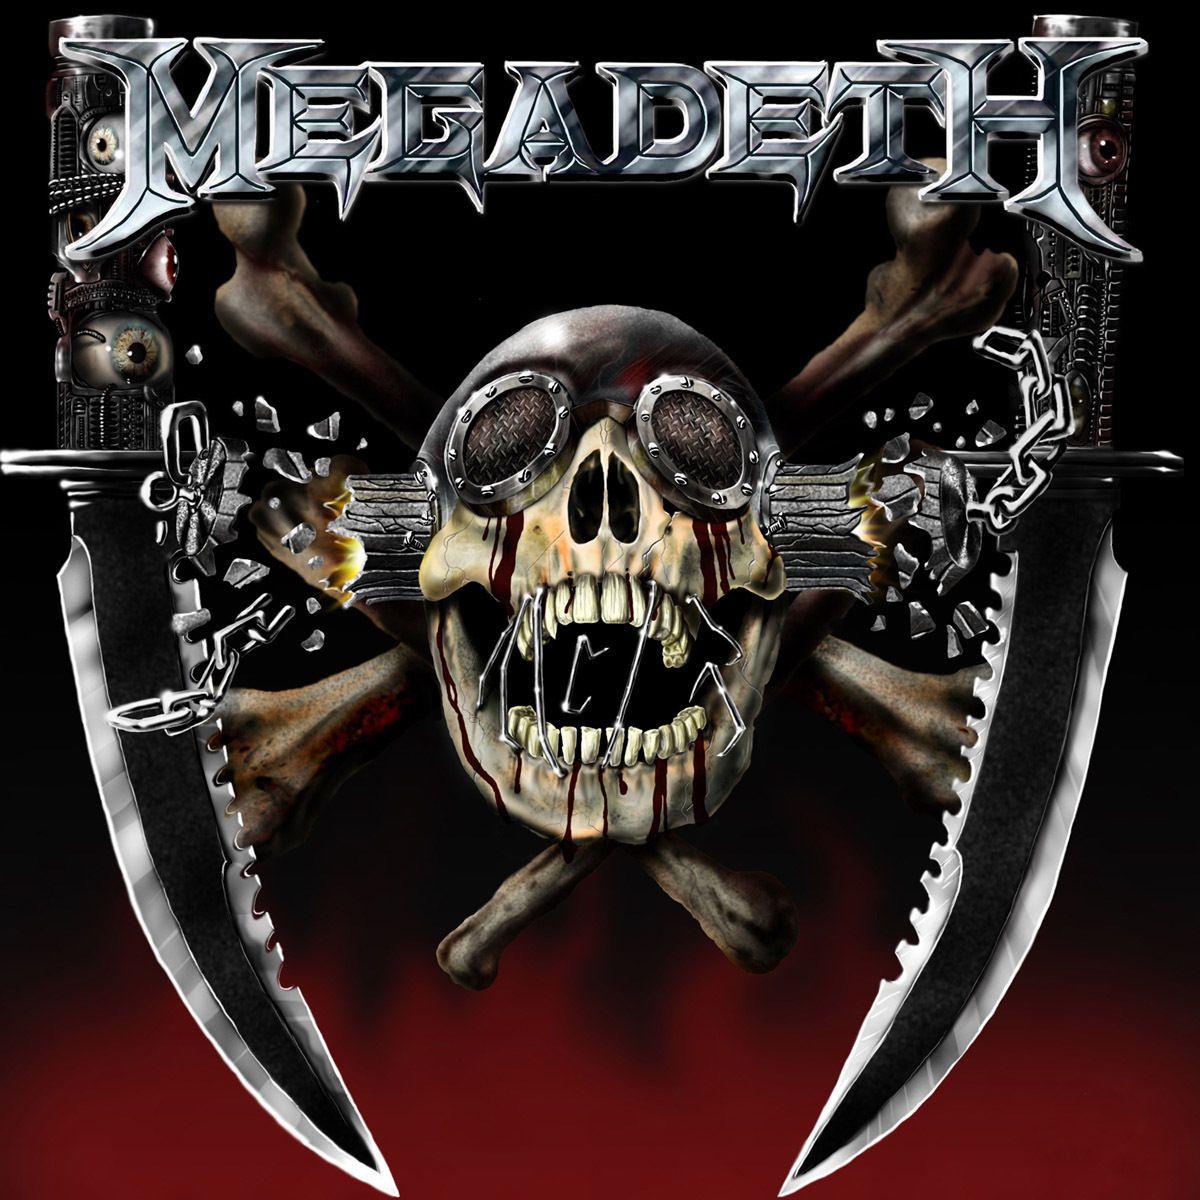 Megadeth Skull Logo - $3 - Megadeth Skull Music Bumper Sticker 5